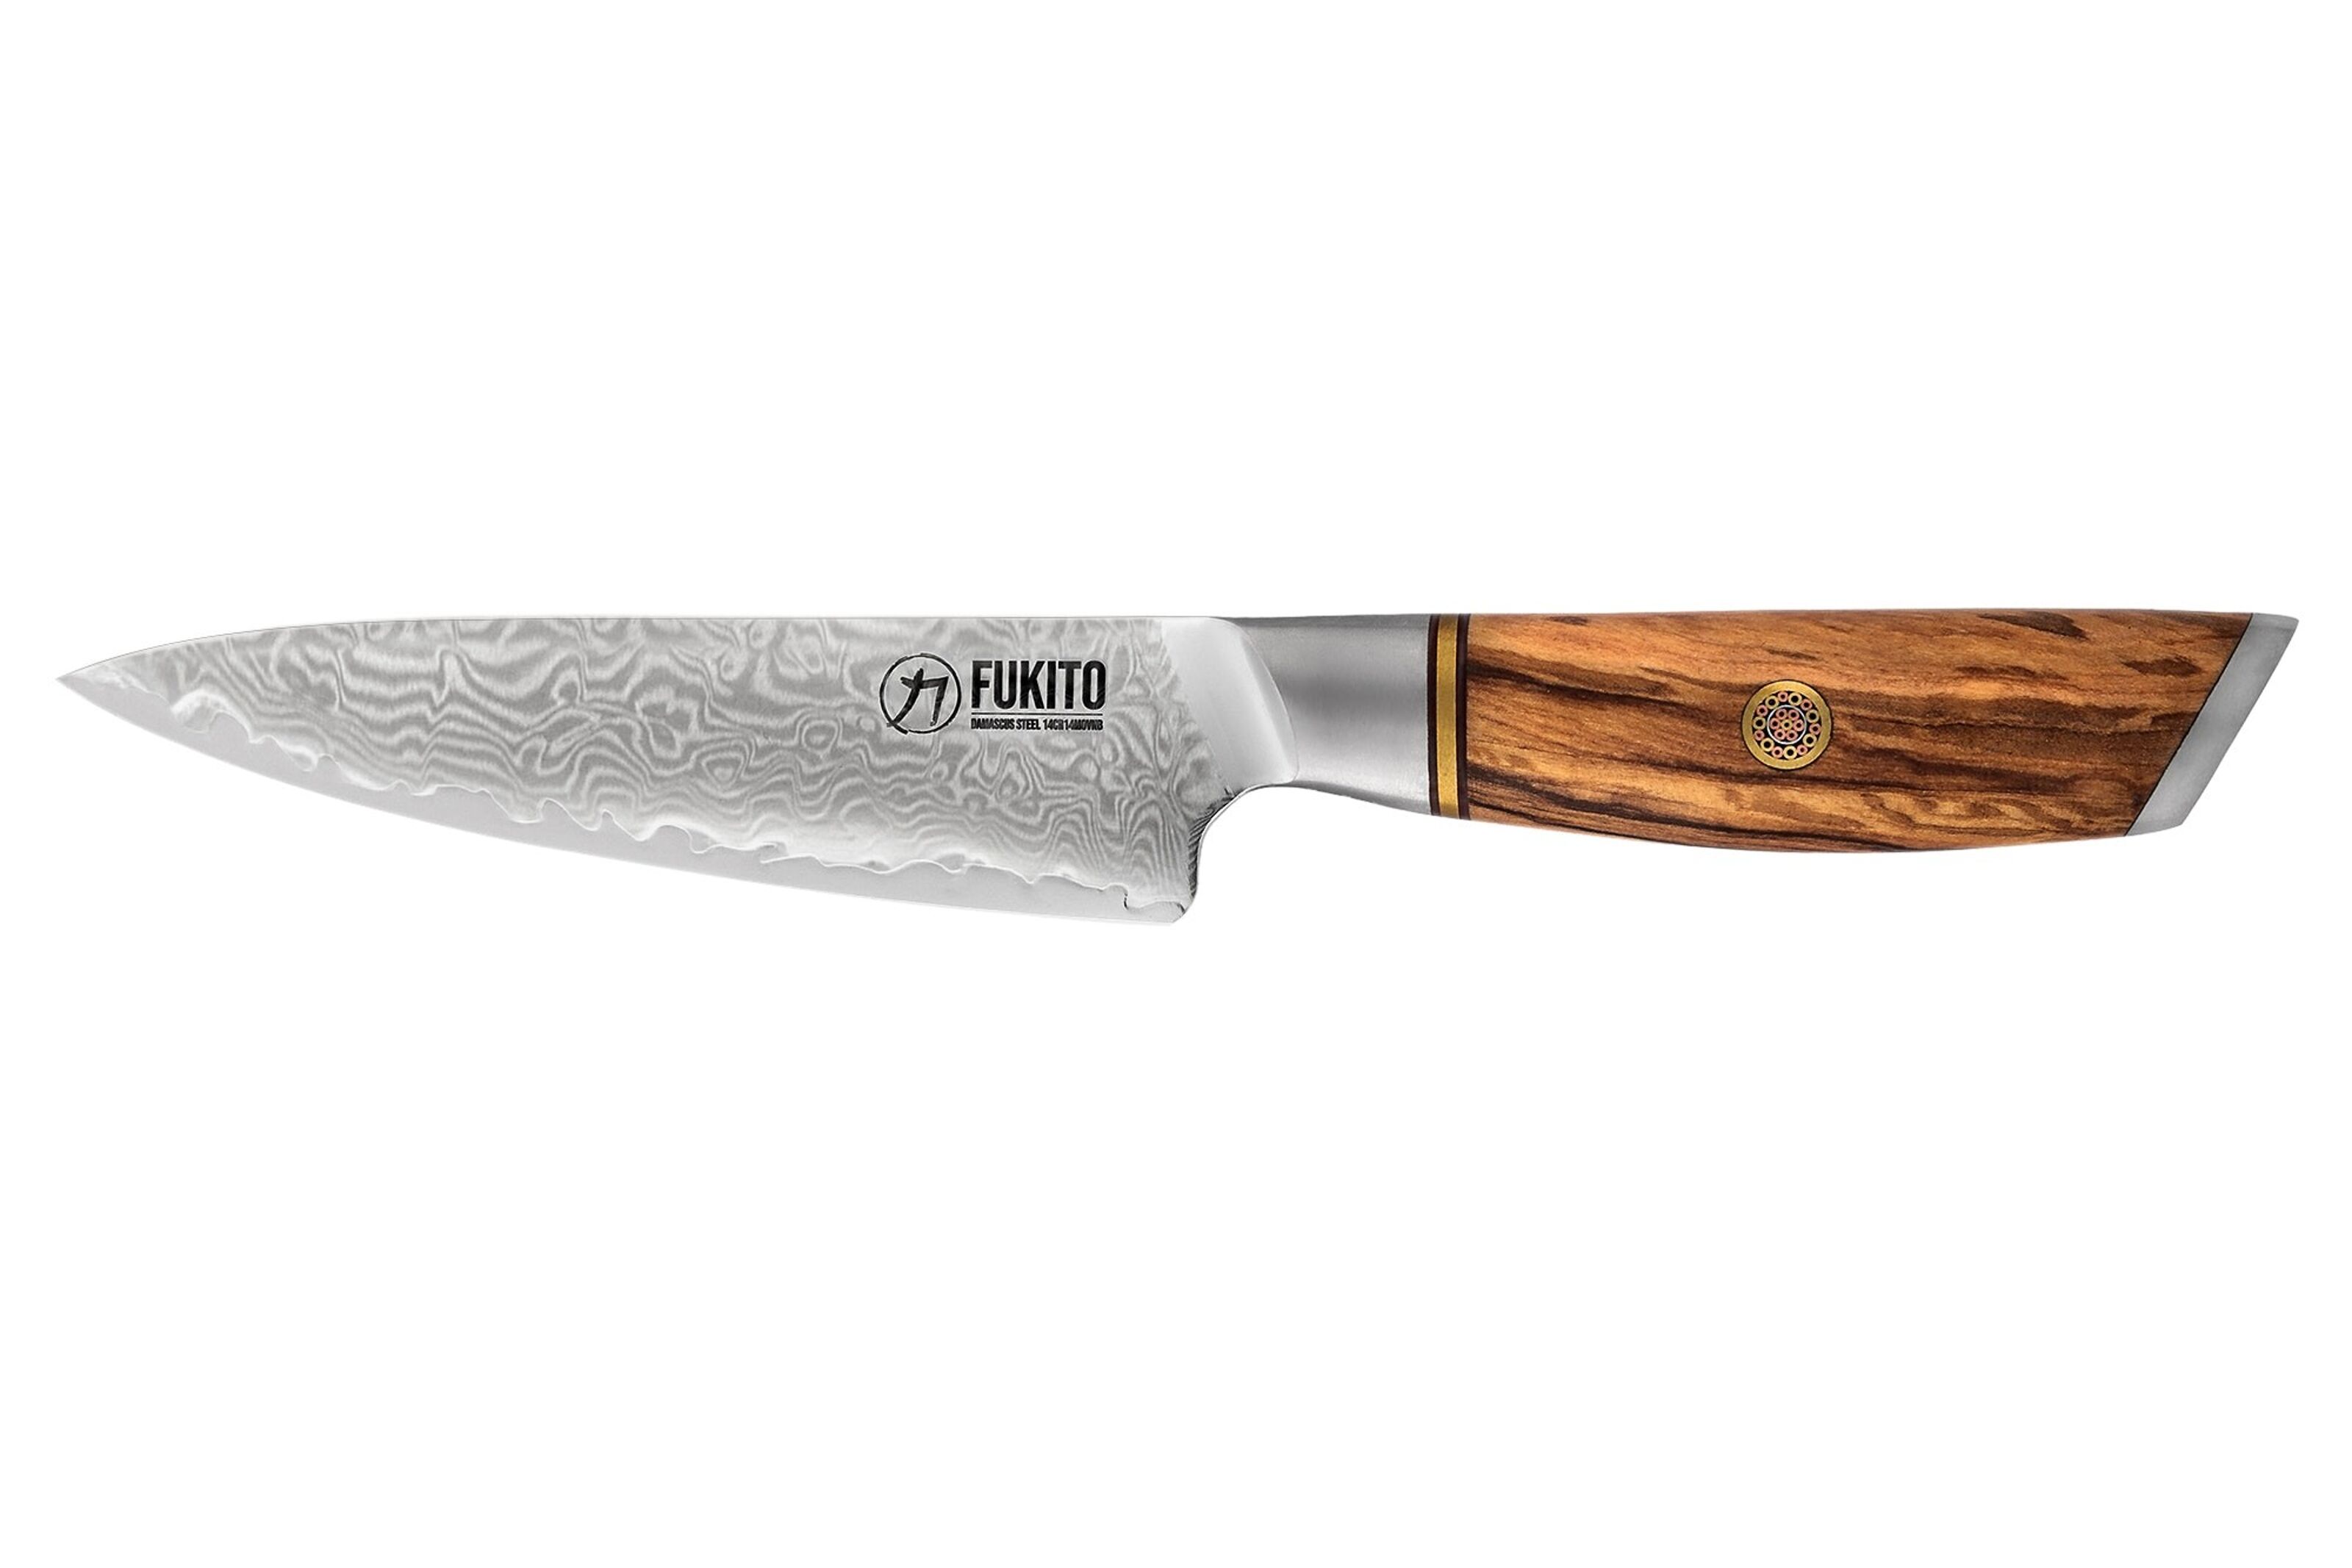 Boutique officielle des couteaux de cuisine Fukito haut de gamme